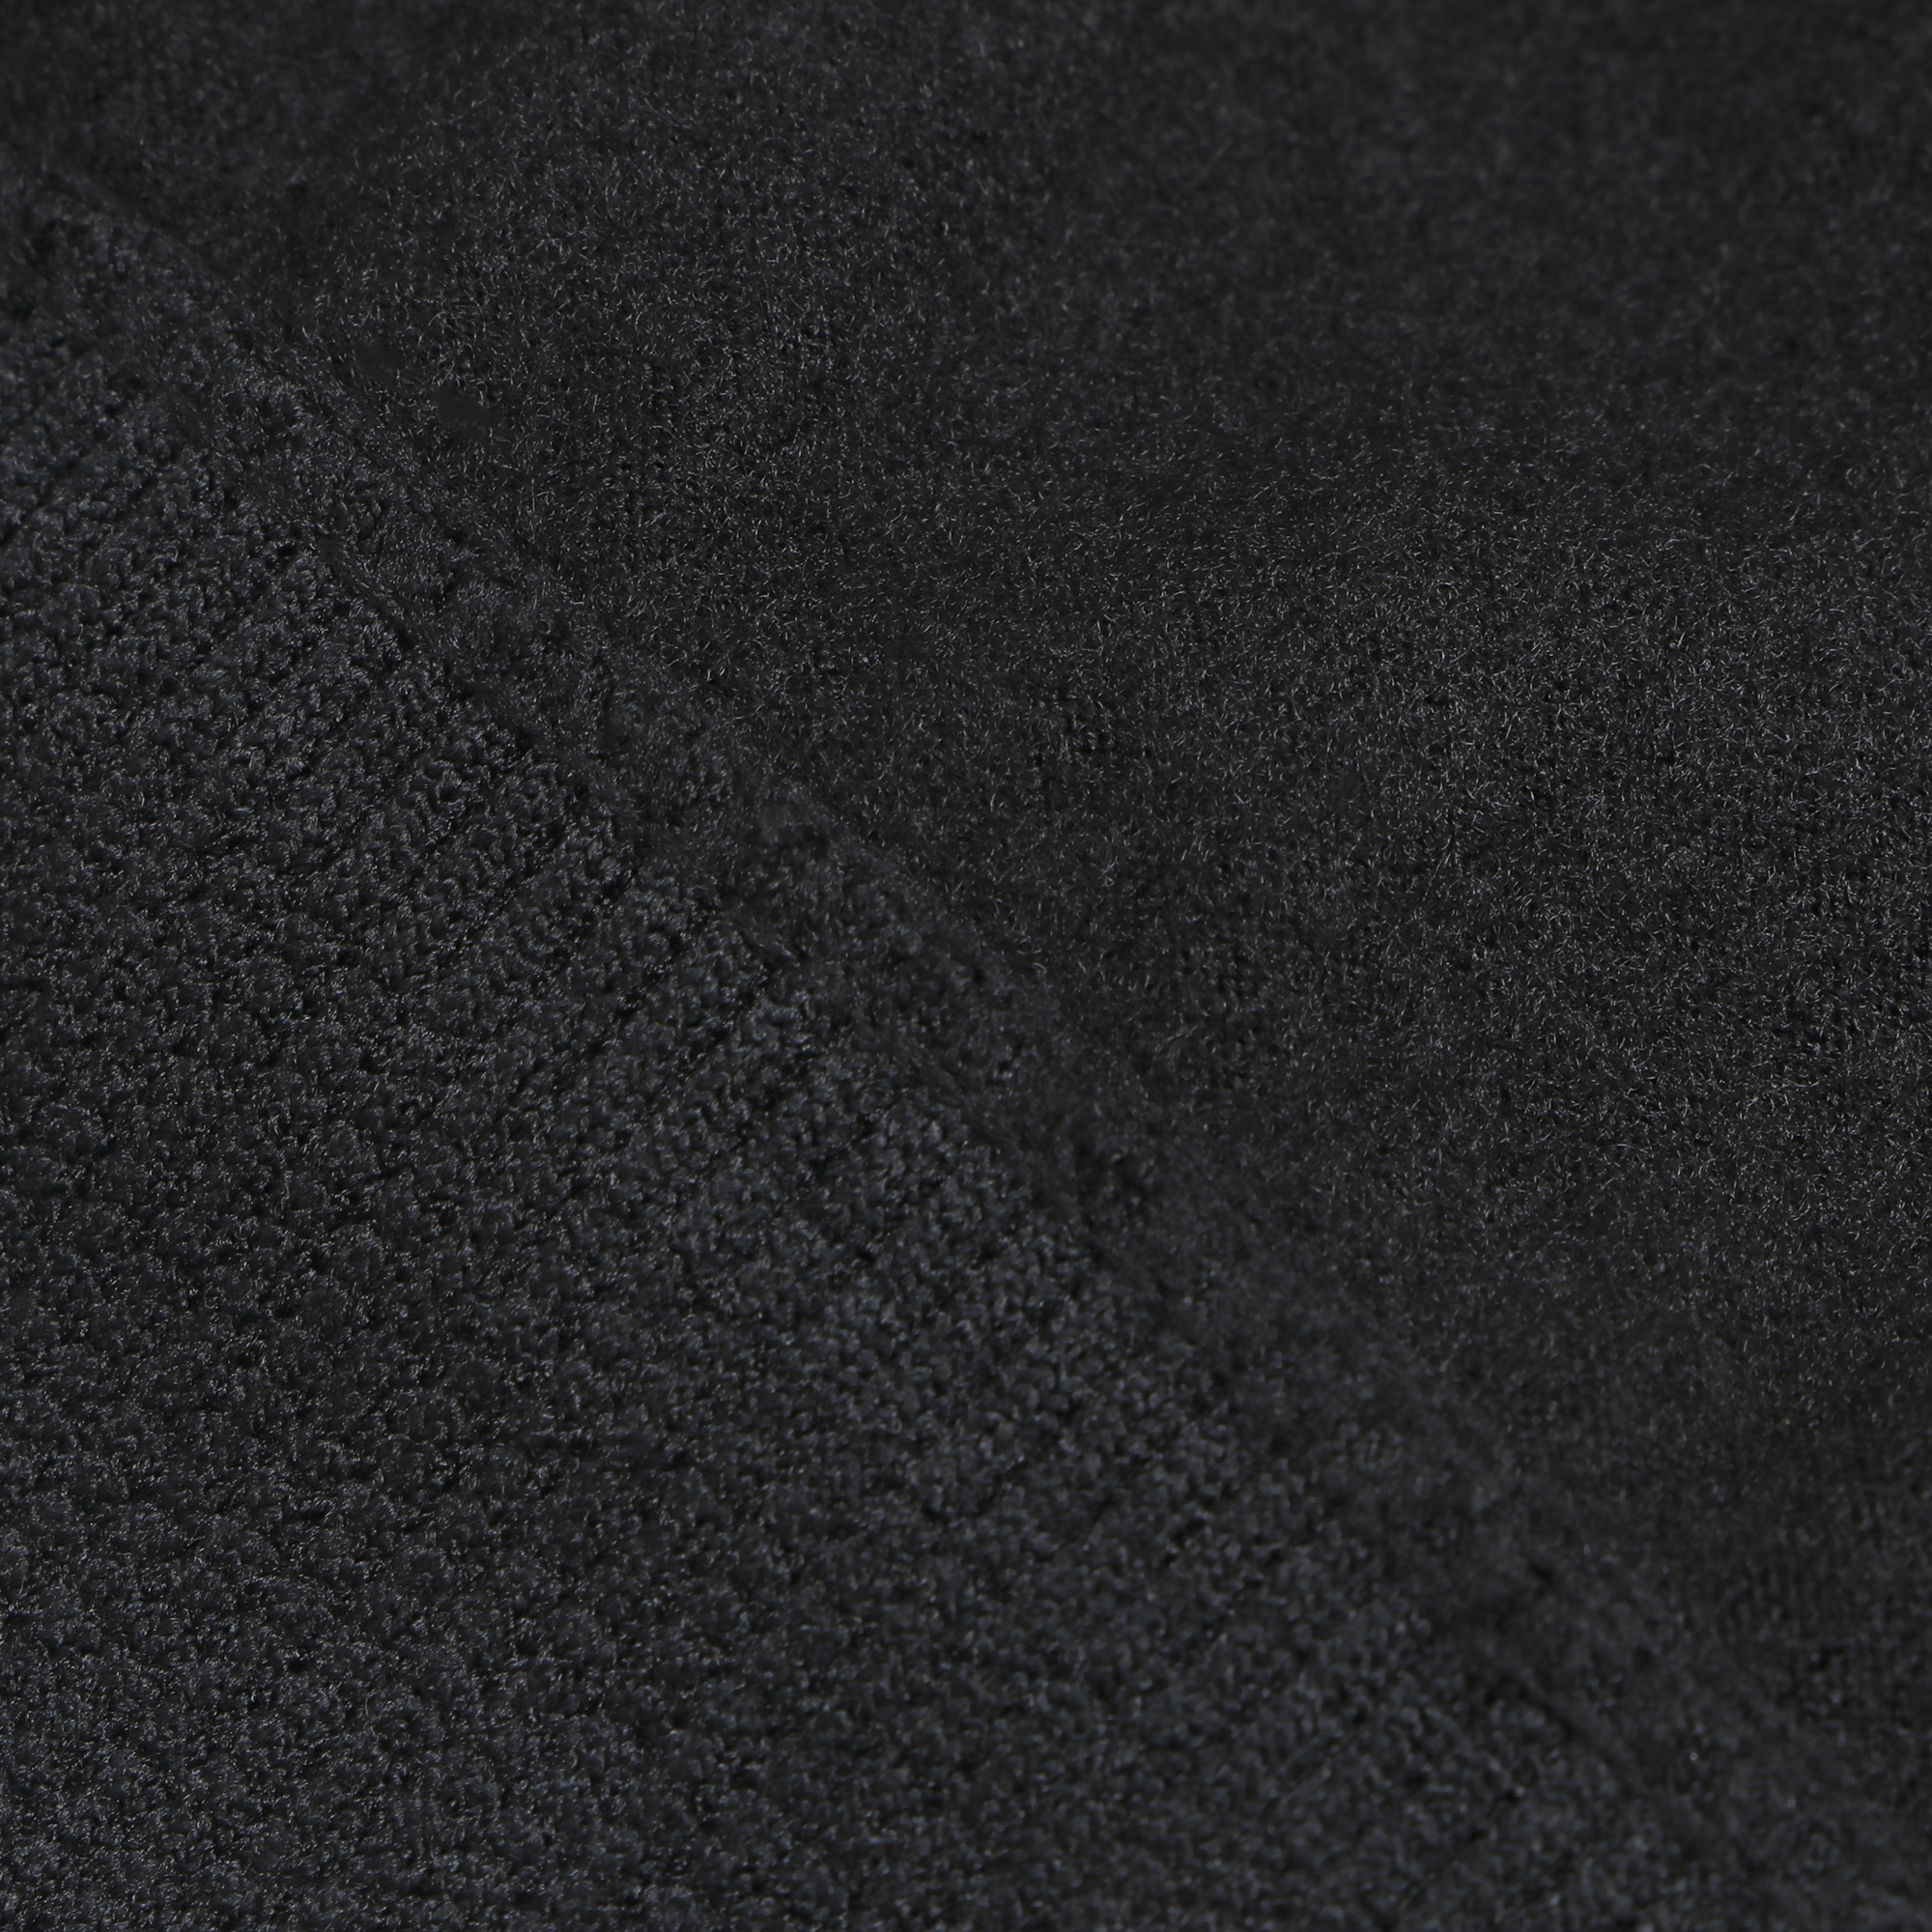 Кальсоны мужские с термоэффектом Oemen M-510 черные 48-50, цвет черный, размер 48-50 - фото 3